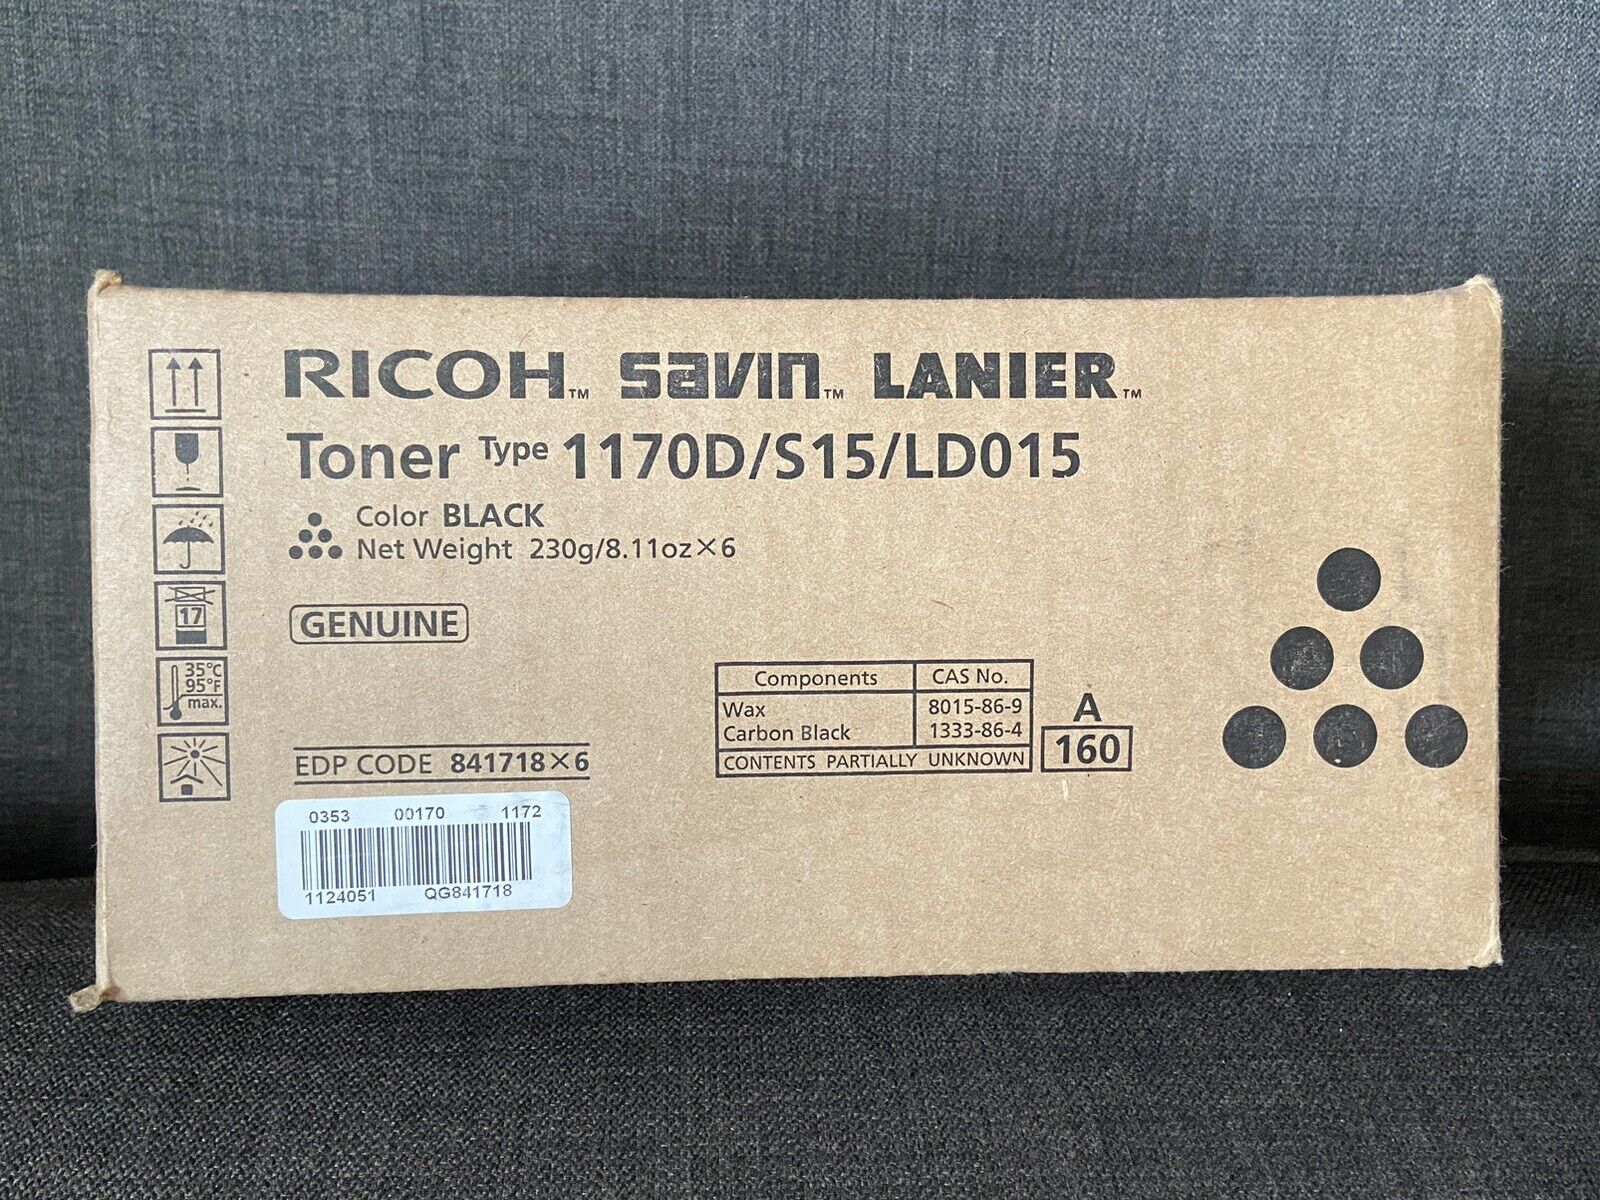 Box of 6 Pcs Ricoh Savin Lanier Genuine Toner 1170D Black NWT Lot of 6 pcs